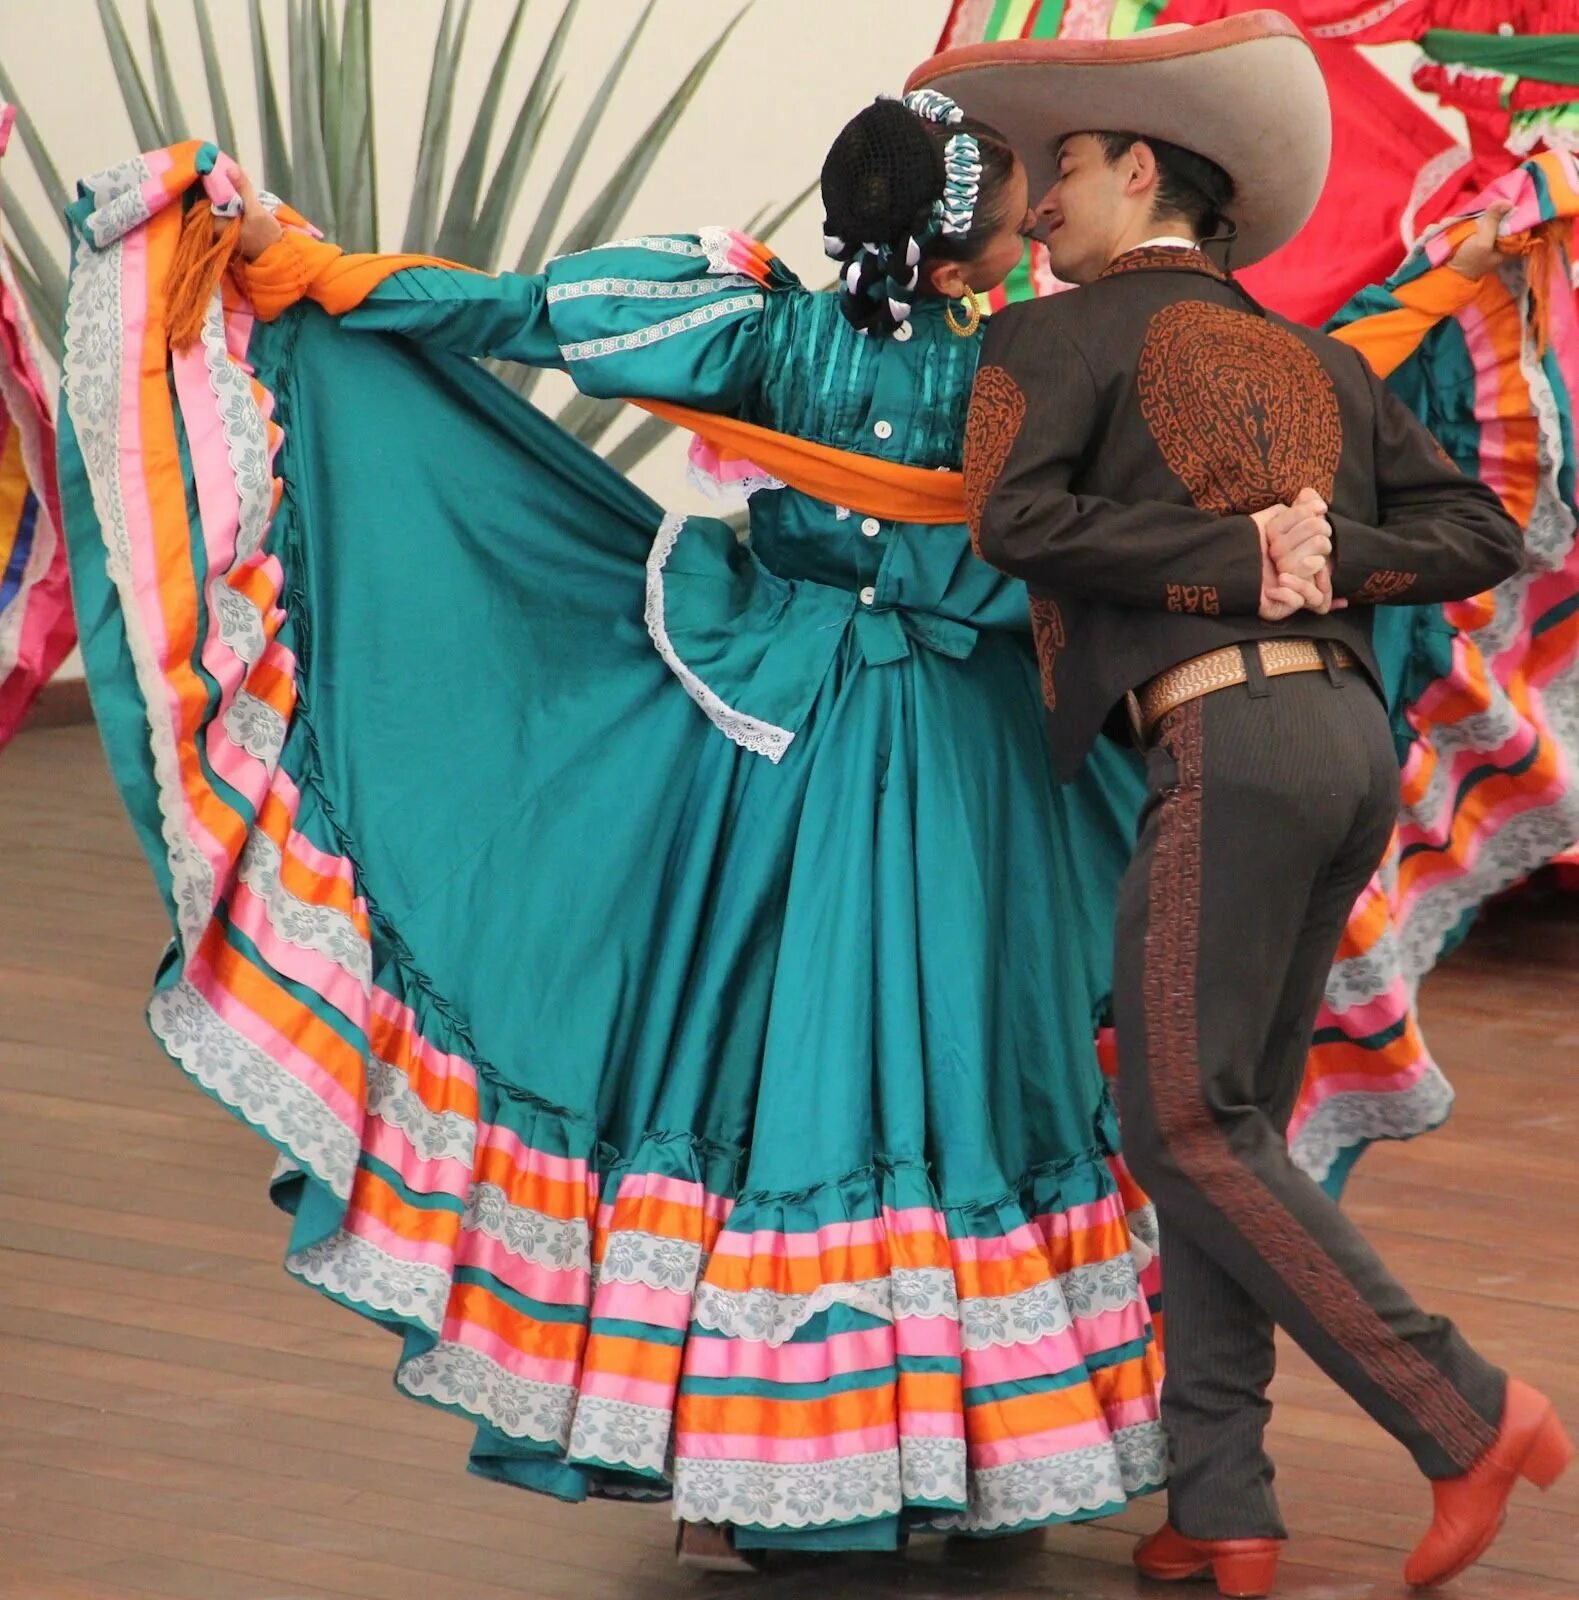 Особенности быта мексики. Харабе Тапатио. Мексика Харабе Тапатио. Харабе Тапатио мексиканский танец. Халиско Мексика национальный костюм женщин.